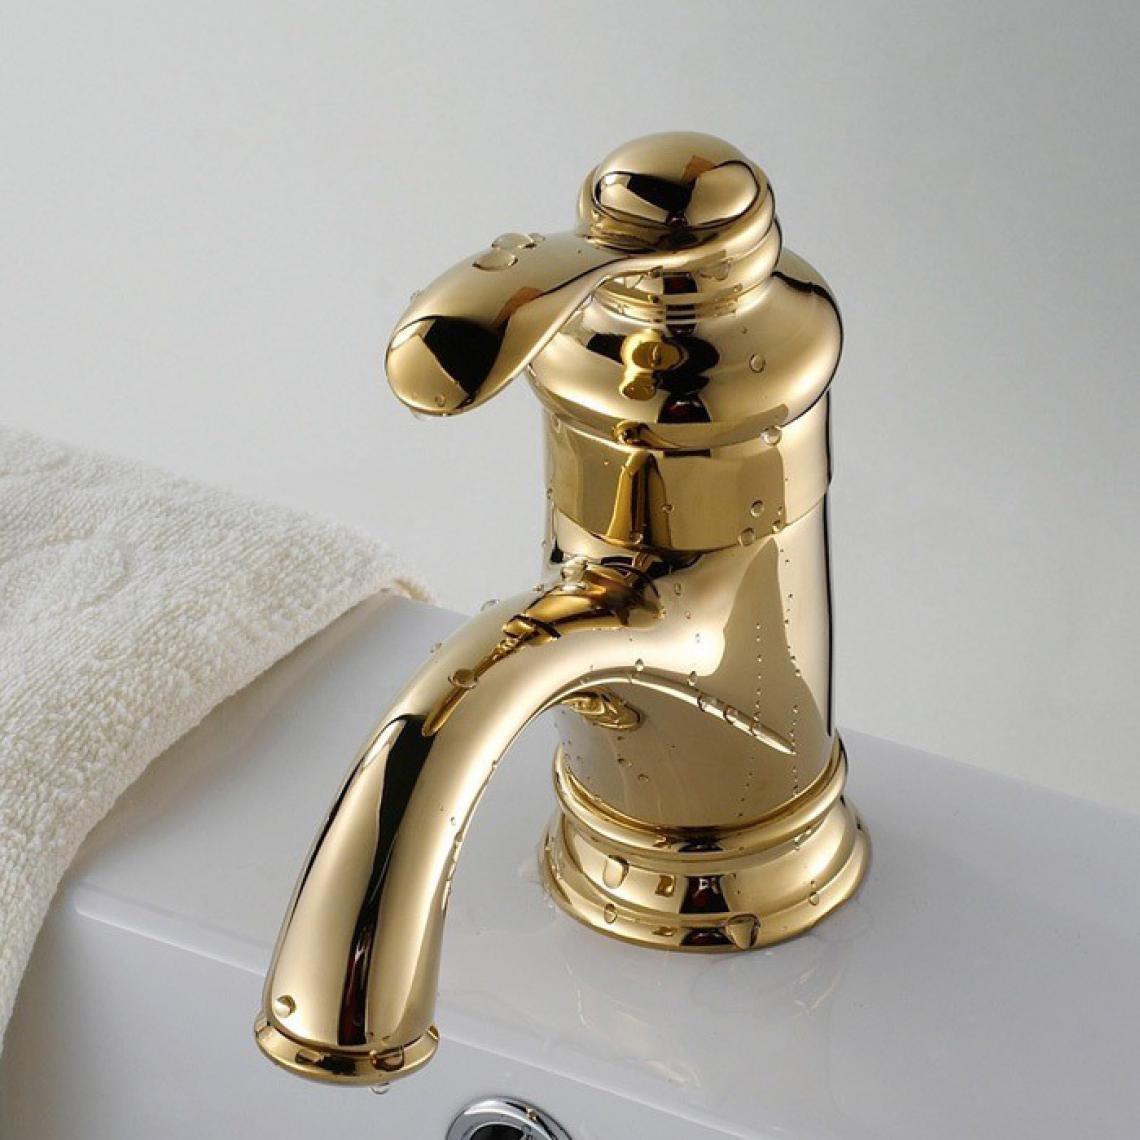 Kroos - Robinet lavabo mitigeur classique à diverses finitions doré - Robinet de lavabo